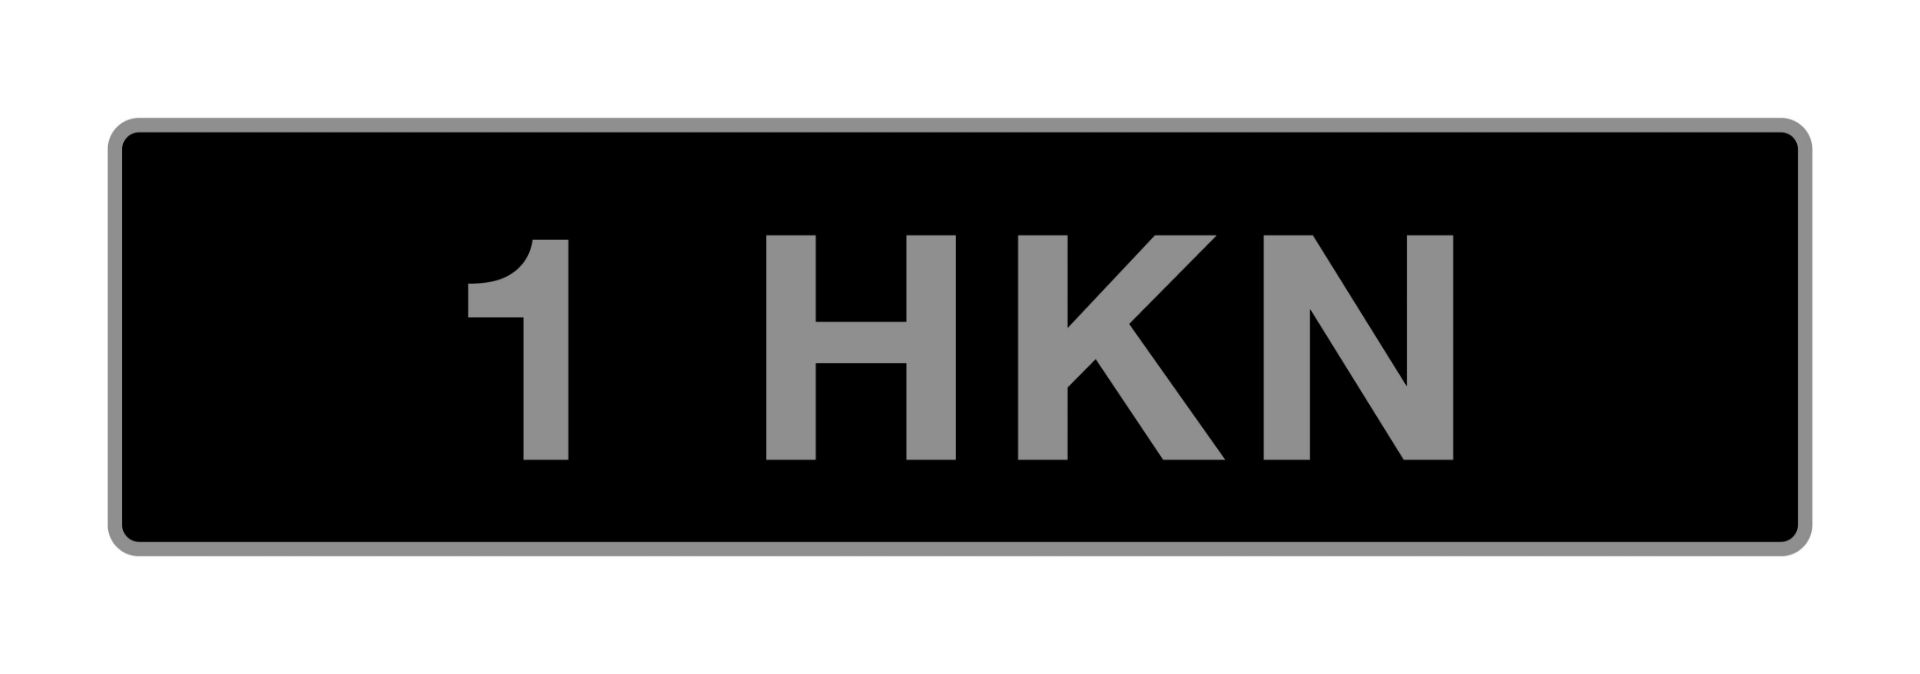 UK Vehicle registration Number '1 HKN'